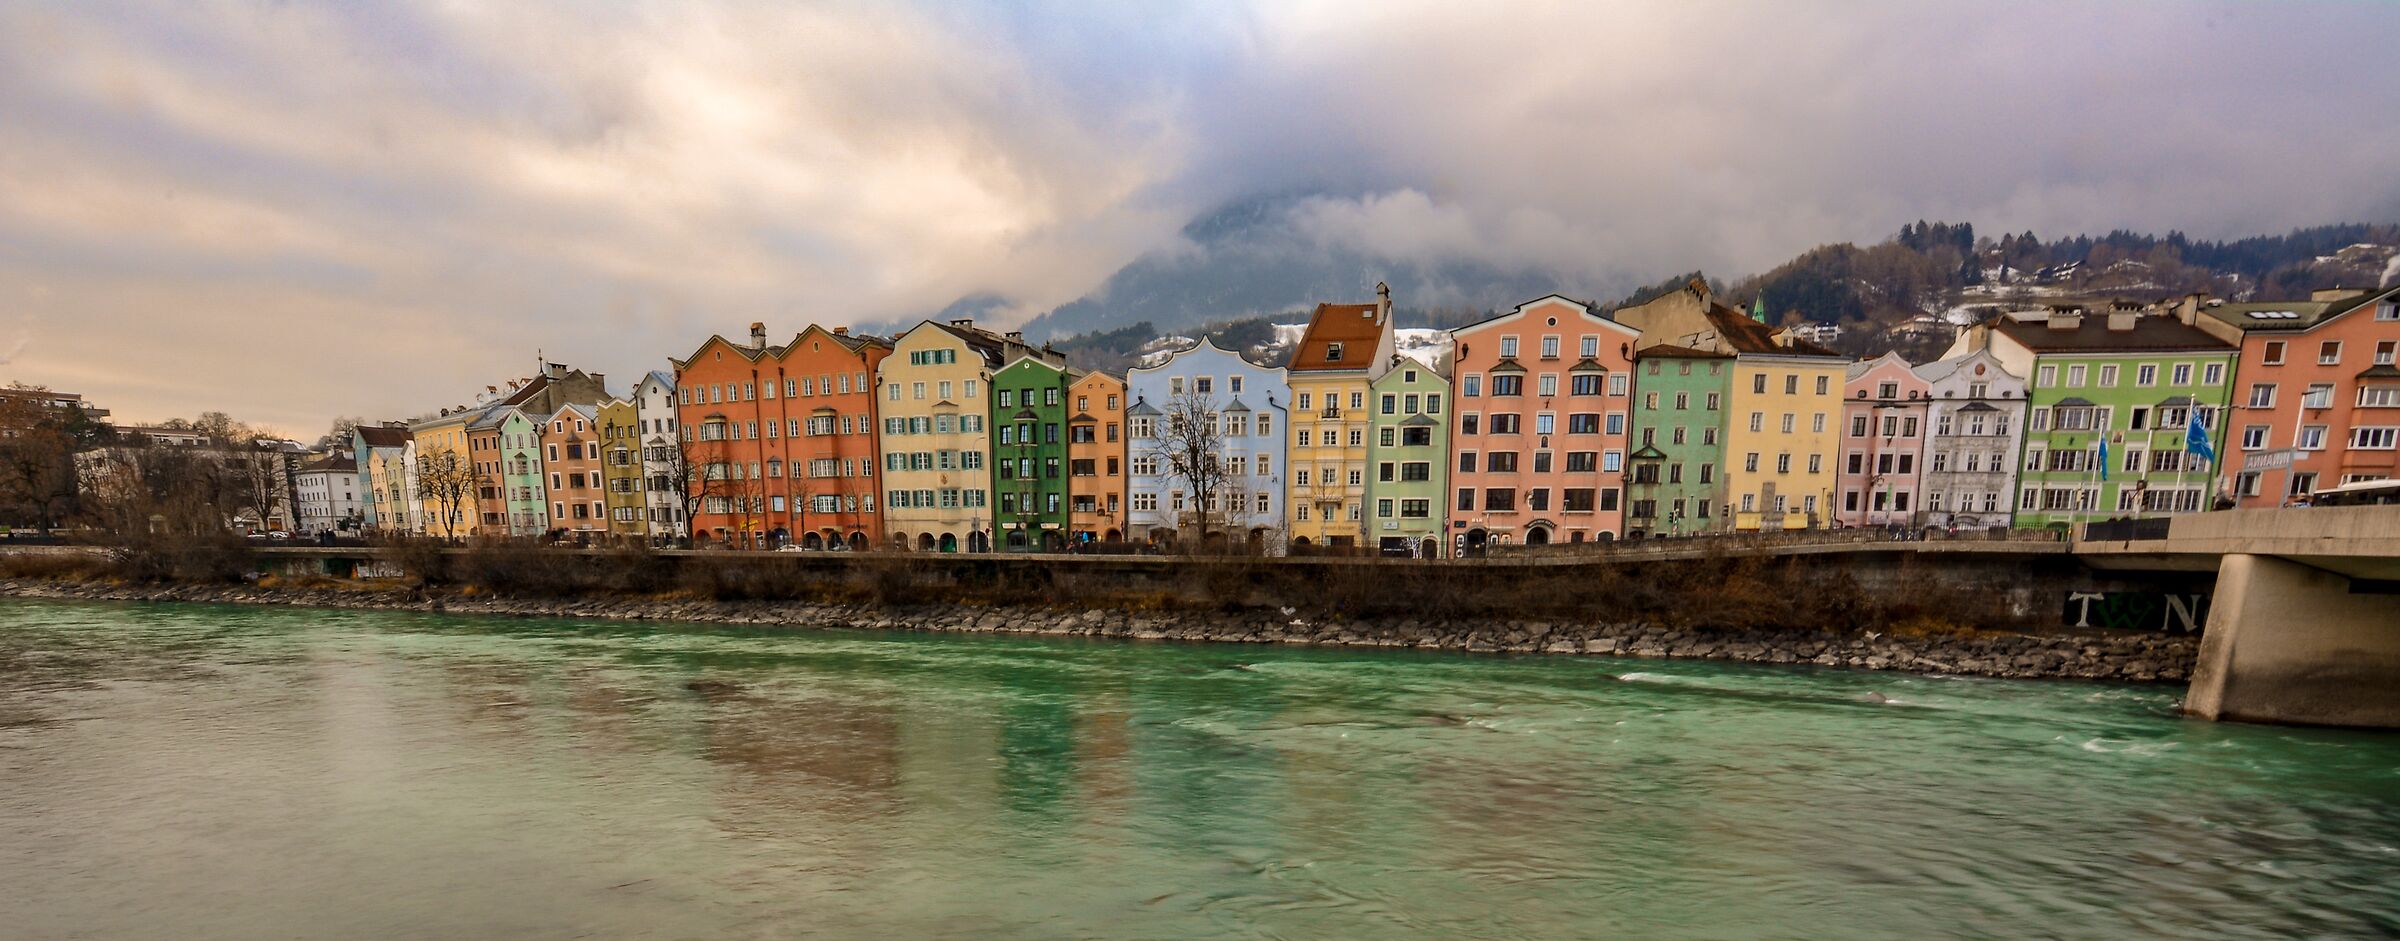 Bridge over the Inn-Innsbruck...